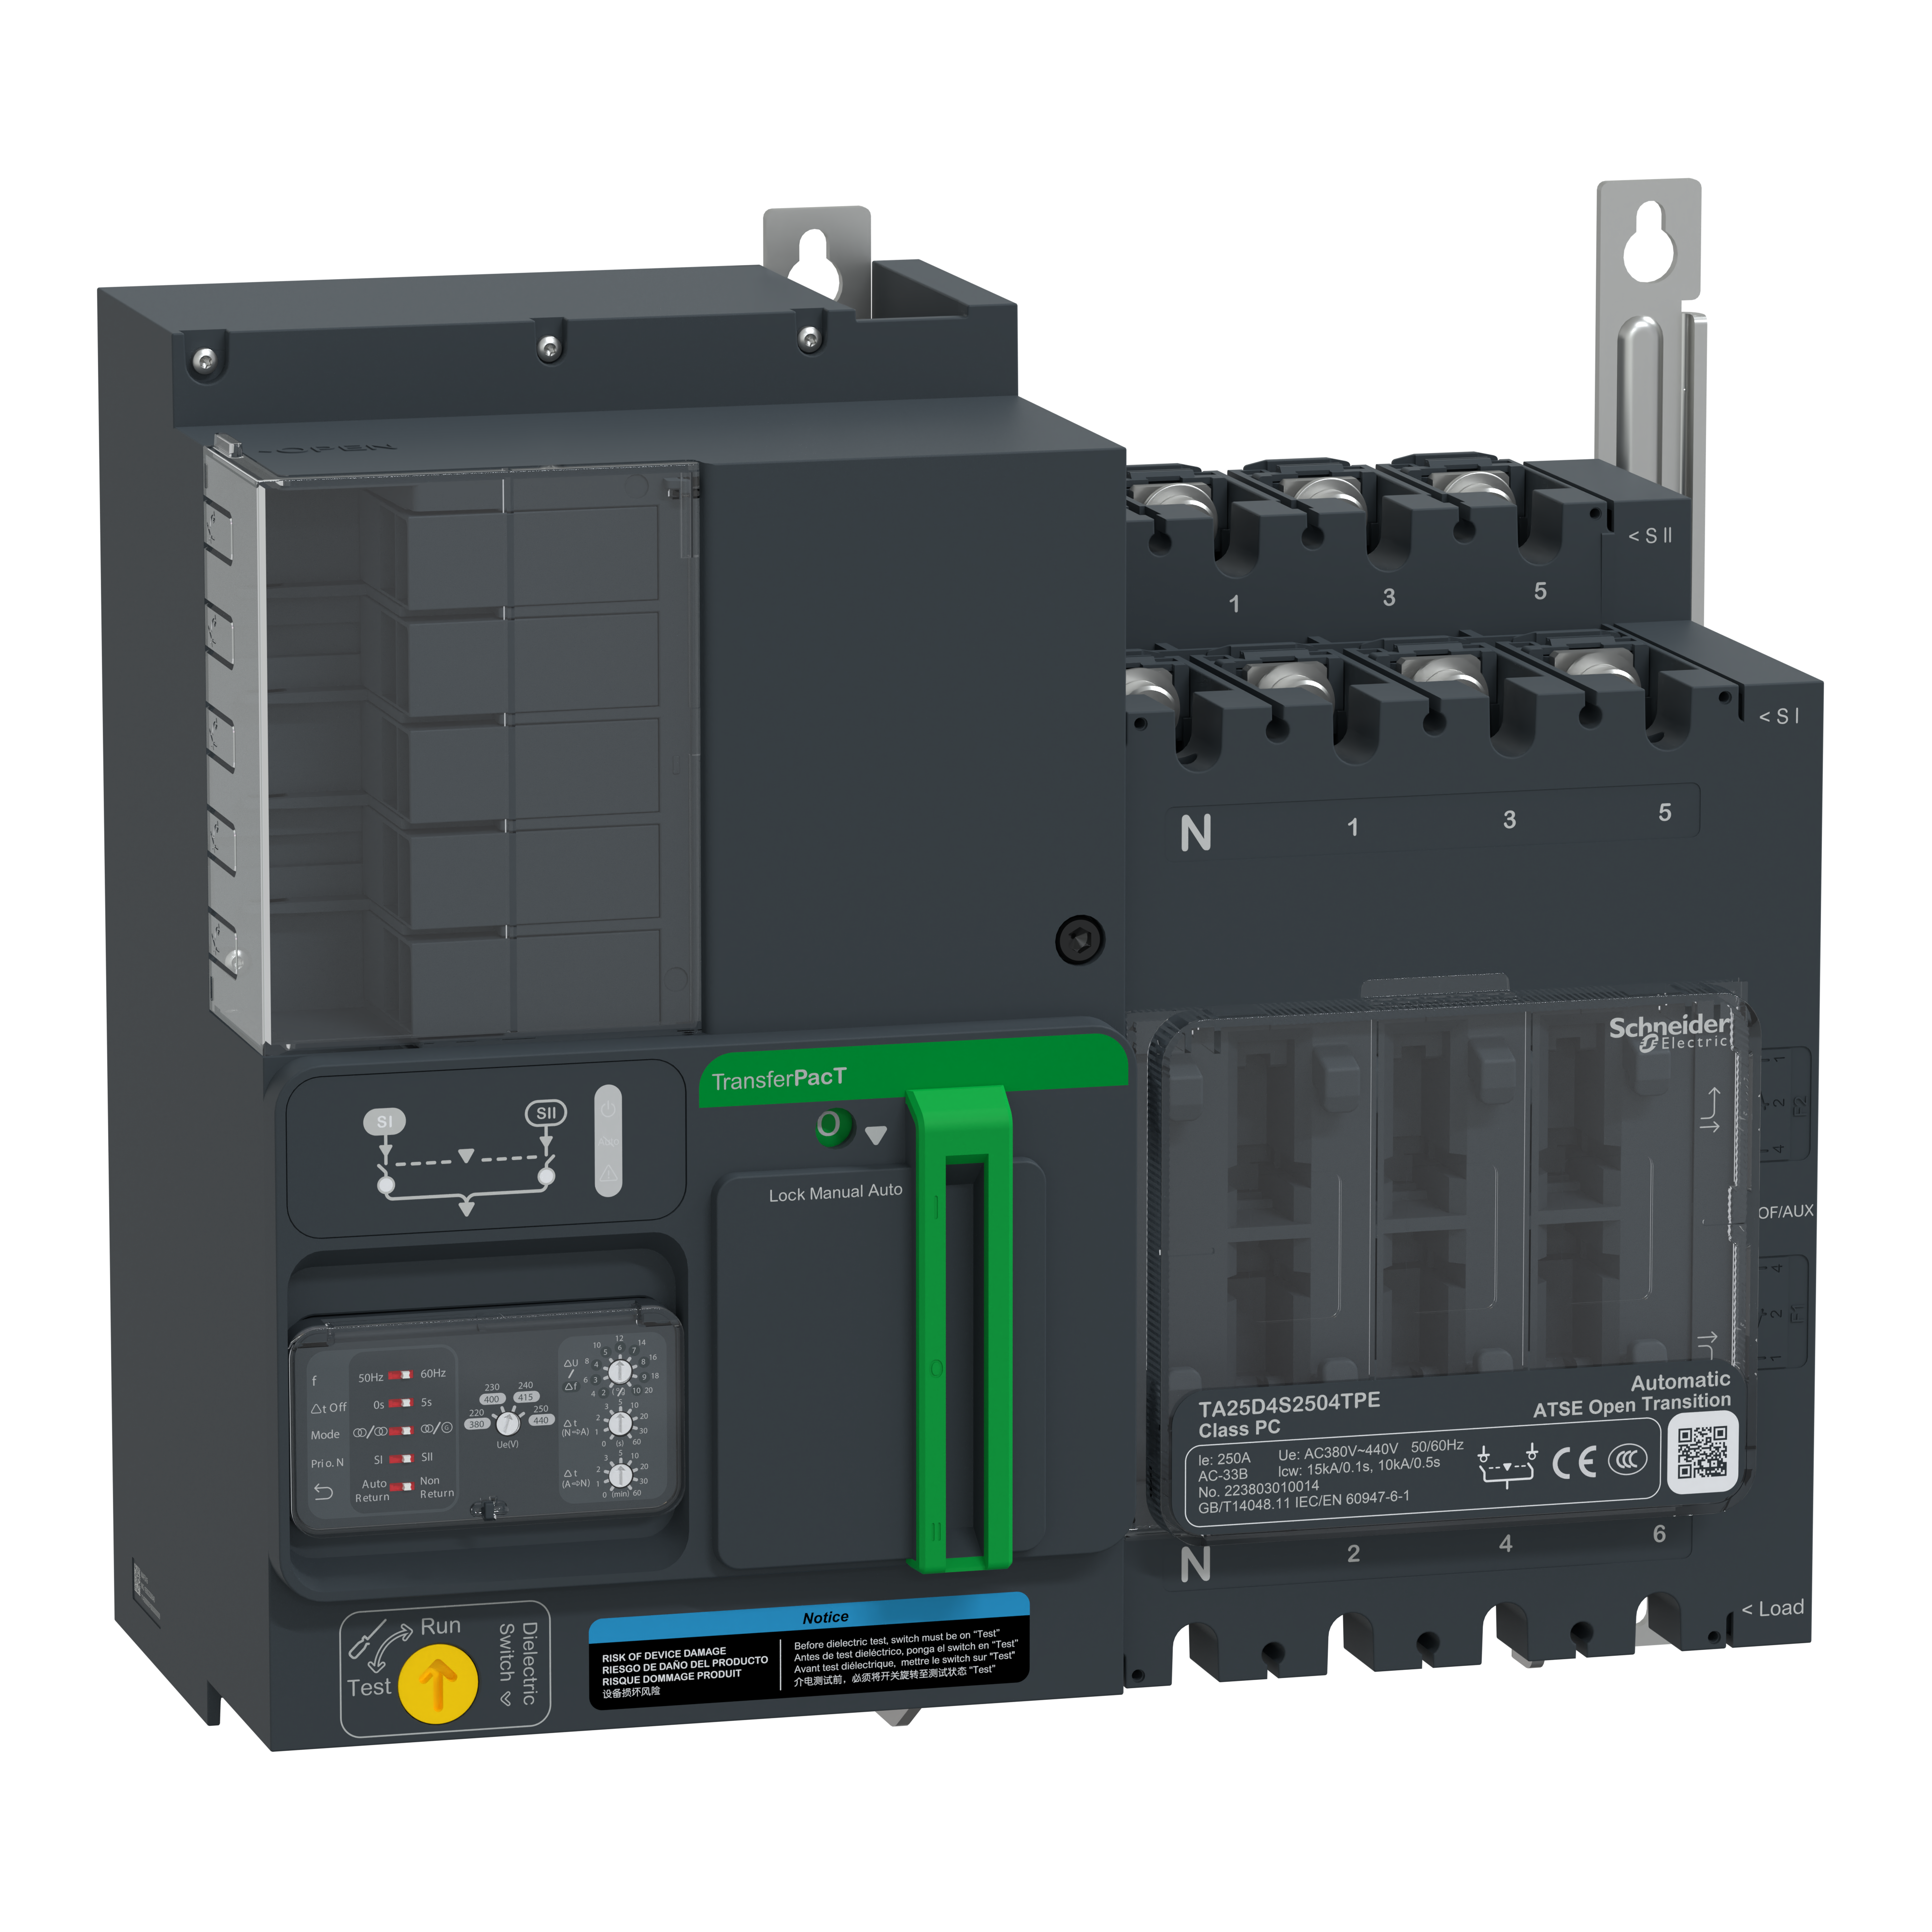 La última generación de conmutadores automáticos de redes TransferPacT de Schneider Electric propone un diseño robusto, fiable, modular y escalable, con la máxima velocidad de transferencia del mercado